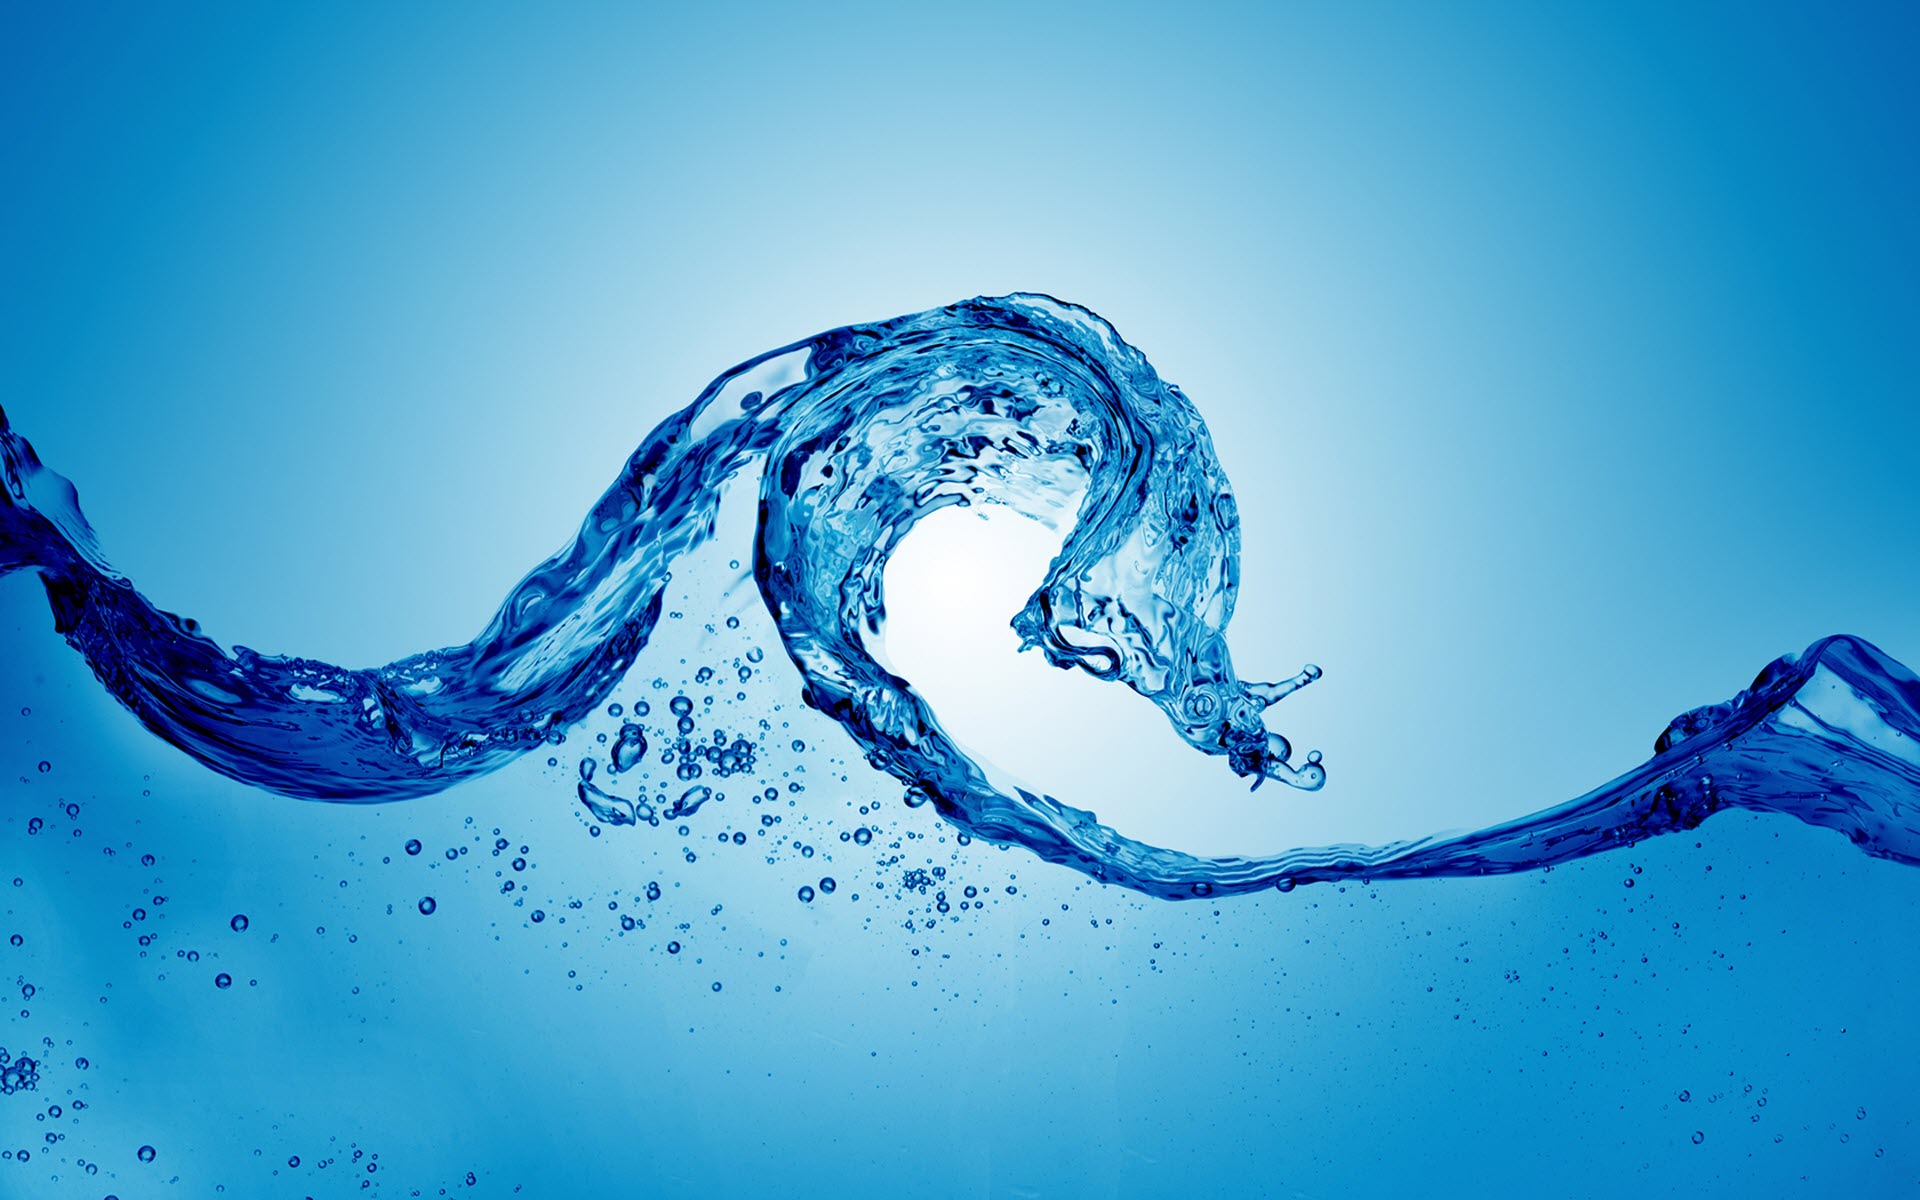 blue_wave_of_water-wide.jpg